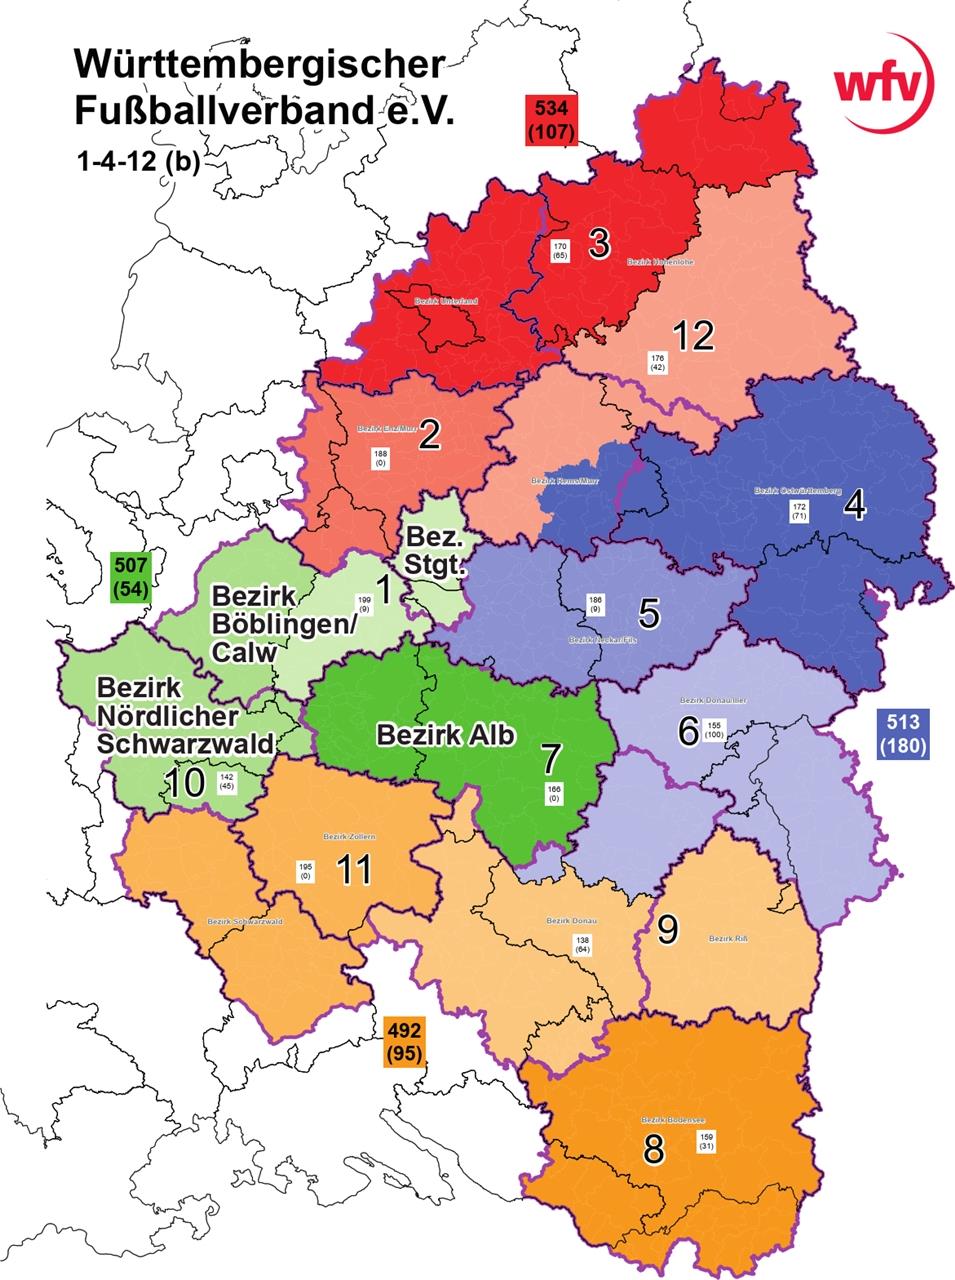 Die favorisierte neue Spielgebiets-Einteilung „1-4-12“ sieht den Bezirk Böblingen/Calw getrennt, die Böblinger Clubs (hellgrün) nach Stuttgart zugeordnet